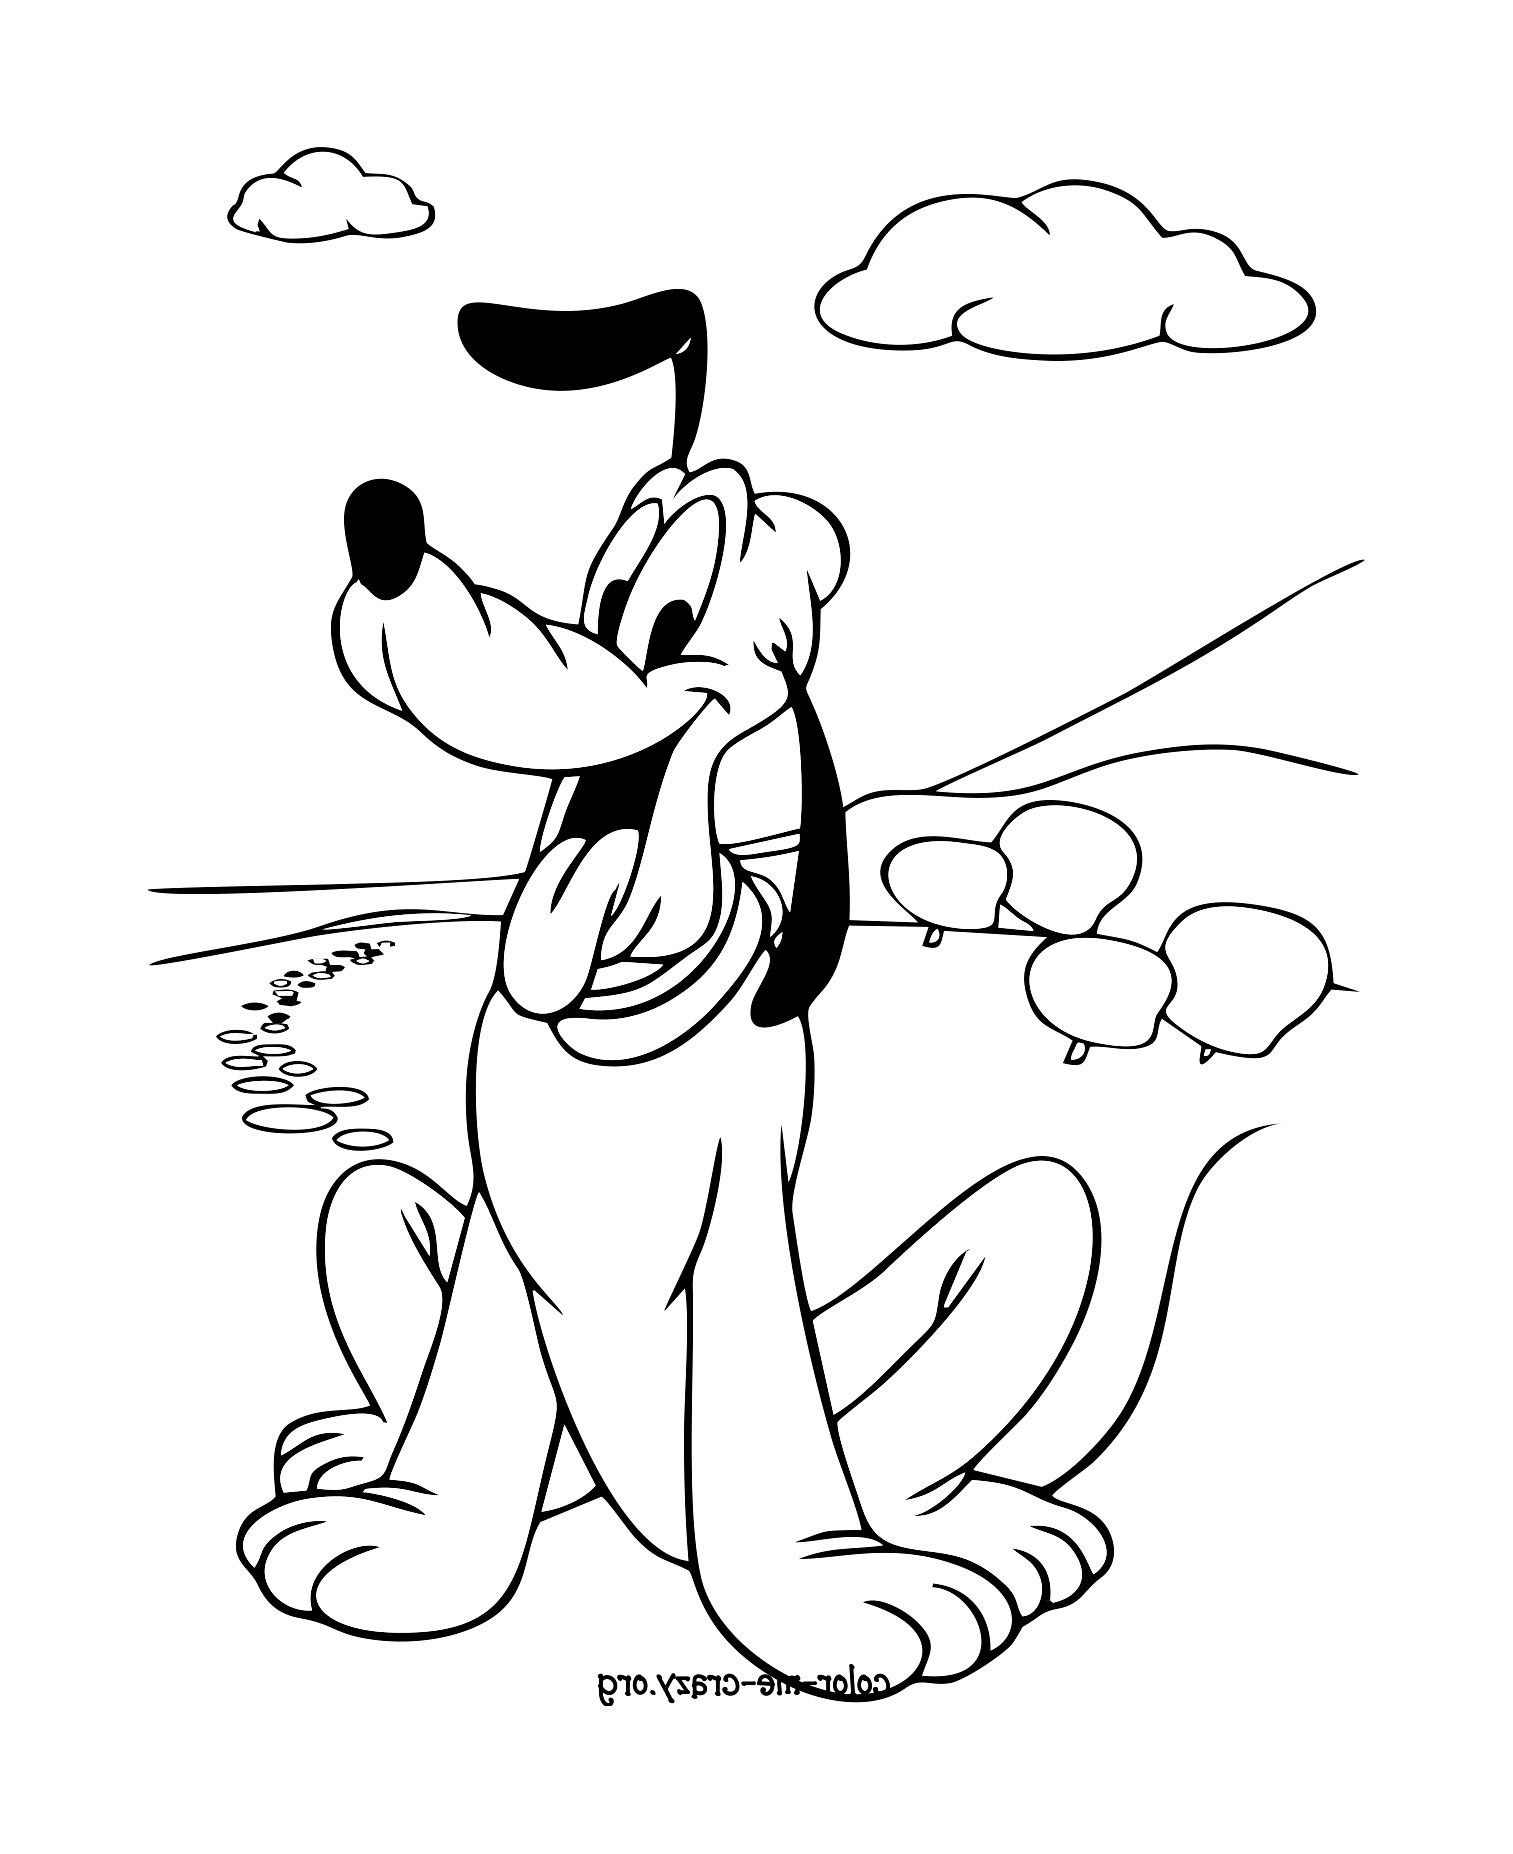 Colorear el perro de Mickey